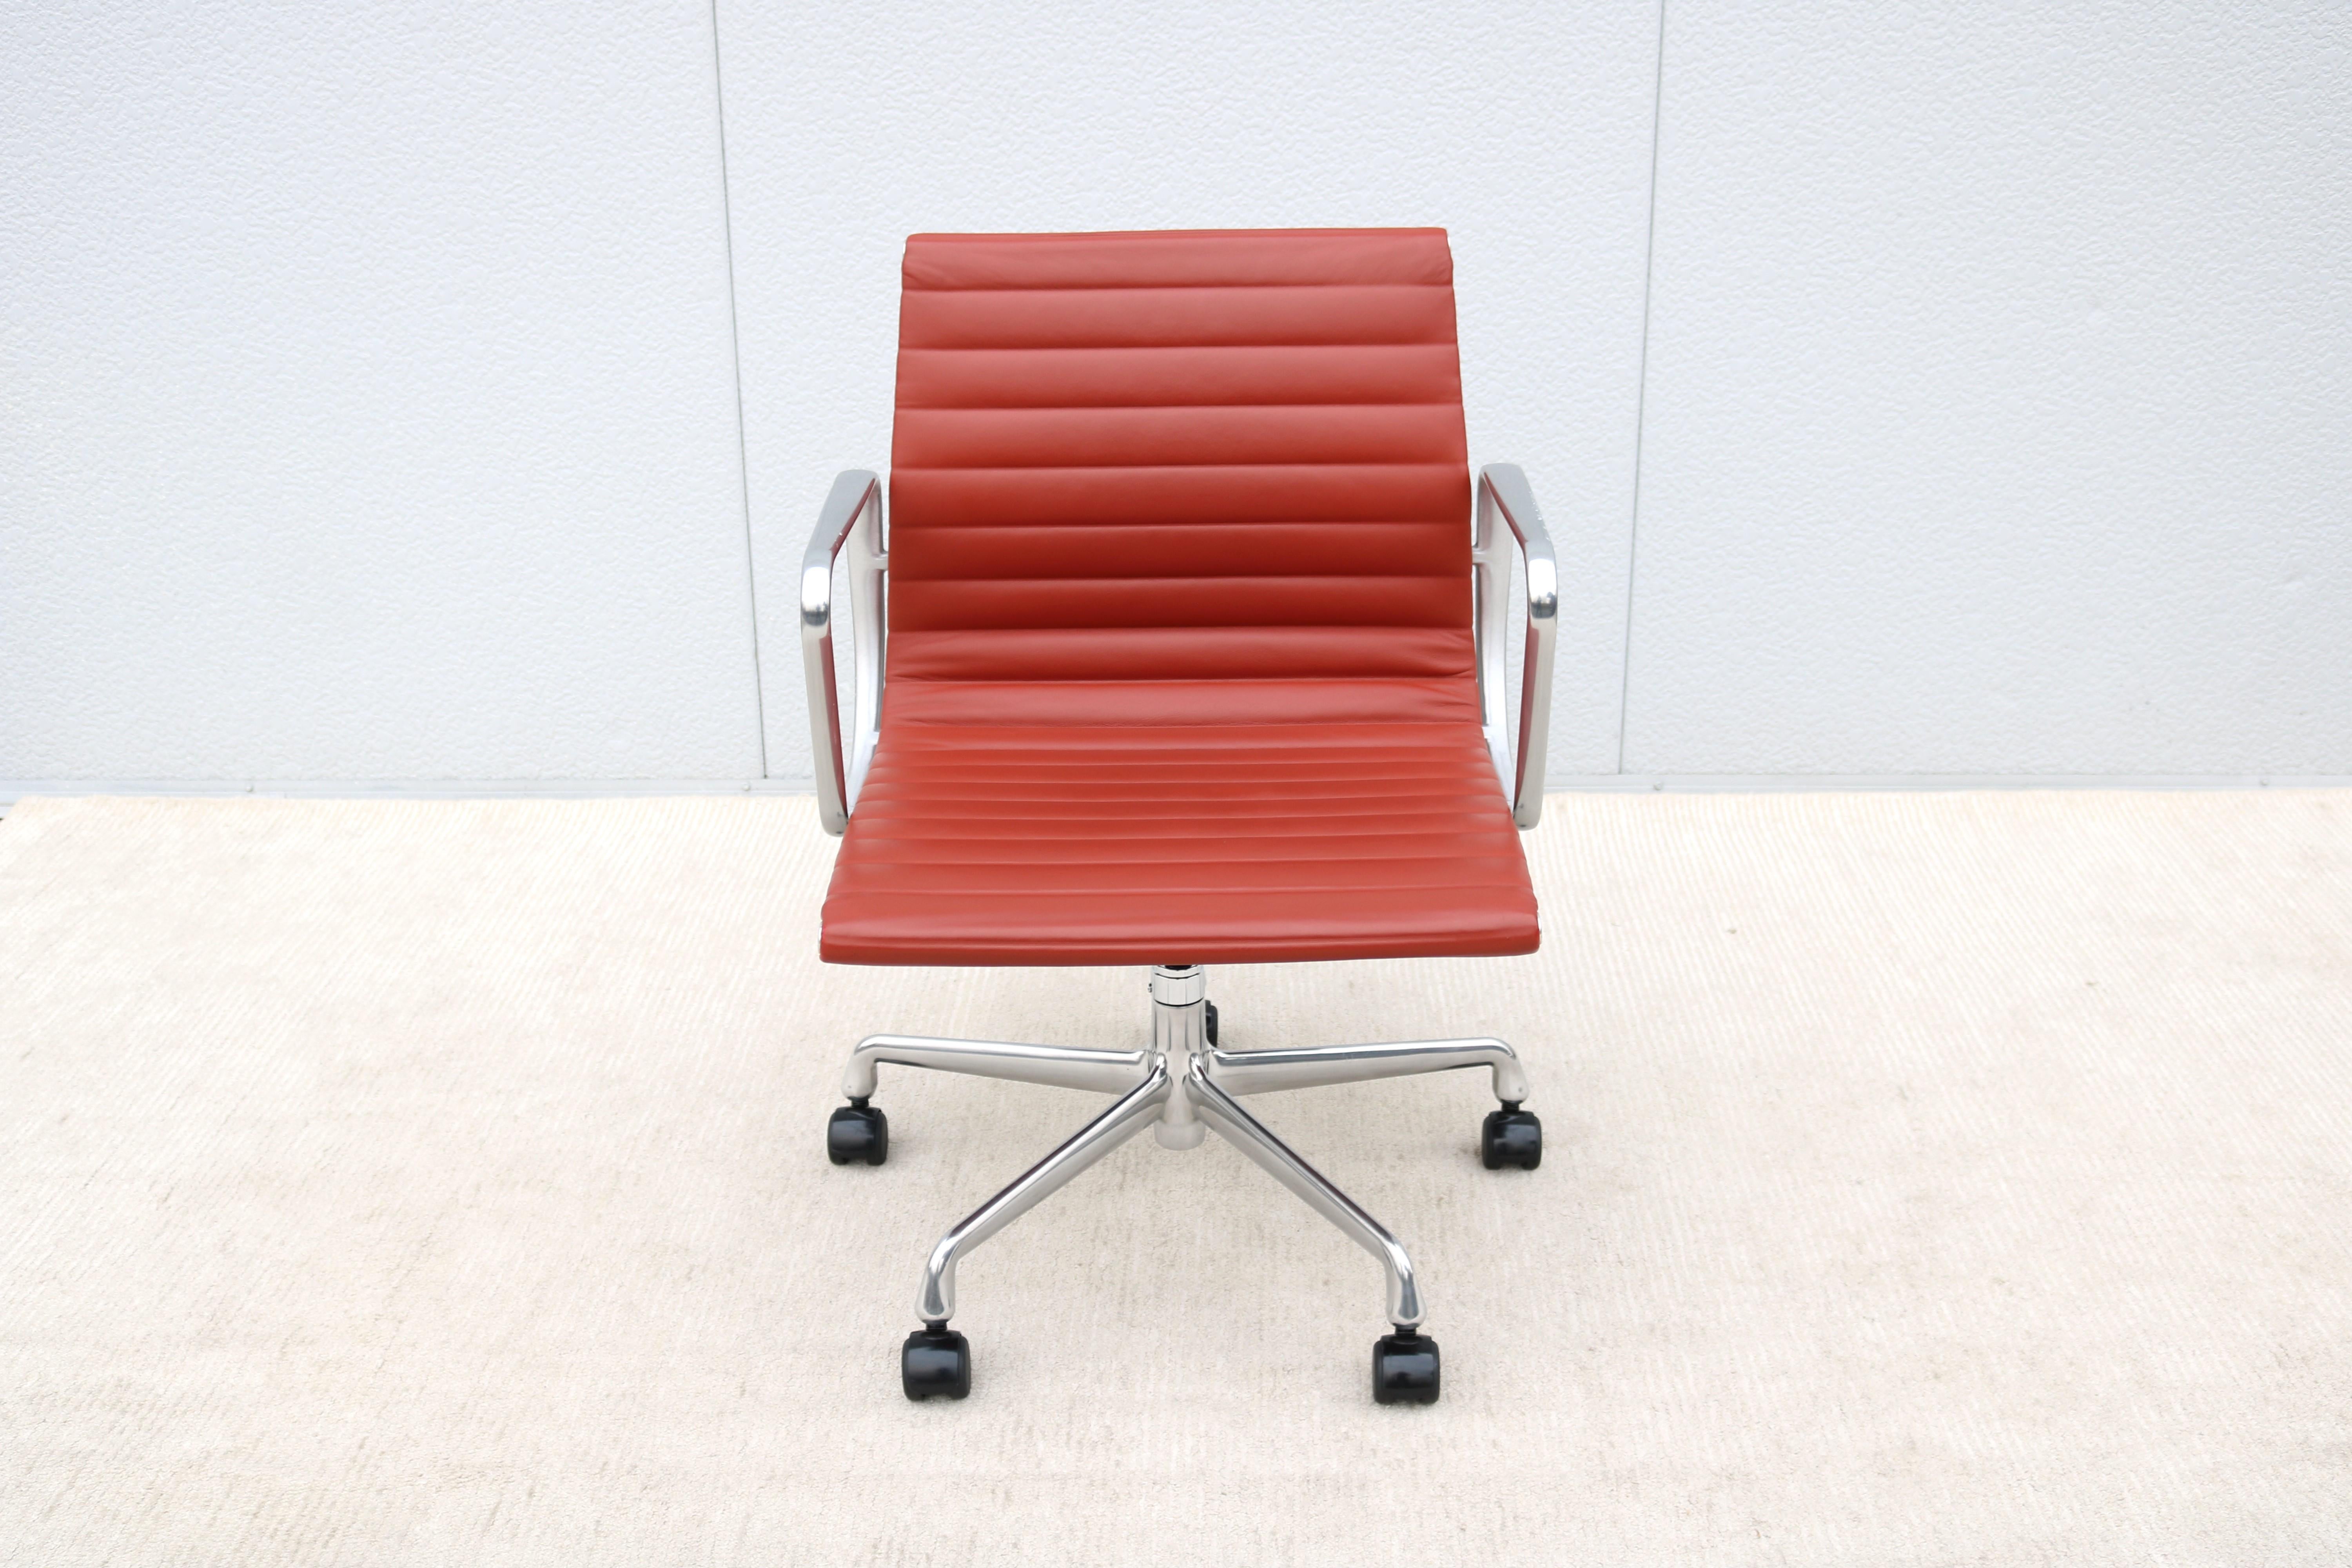 Atemberaubende authentische Mitte des Jahrhunderts modernen Eames Aluminium Gruppe Management Stuhl.
Ein zeitloser Designklassiker mit innovativen Komfortmerkmalen.
Einer der beliebtesten Stühle von Herman Miller wurde 1958 von Charles und Ray Eames